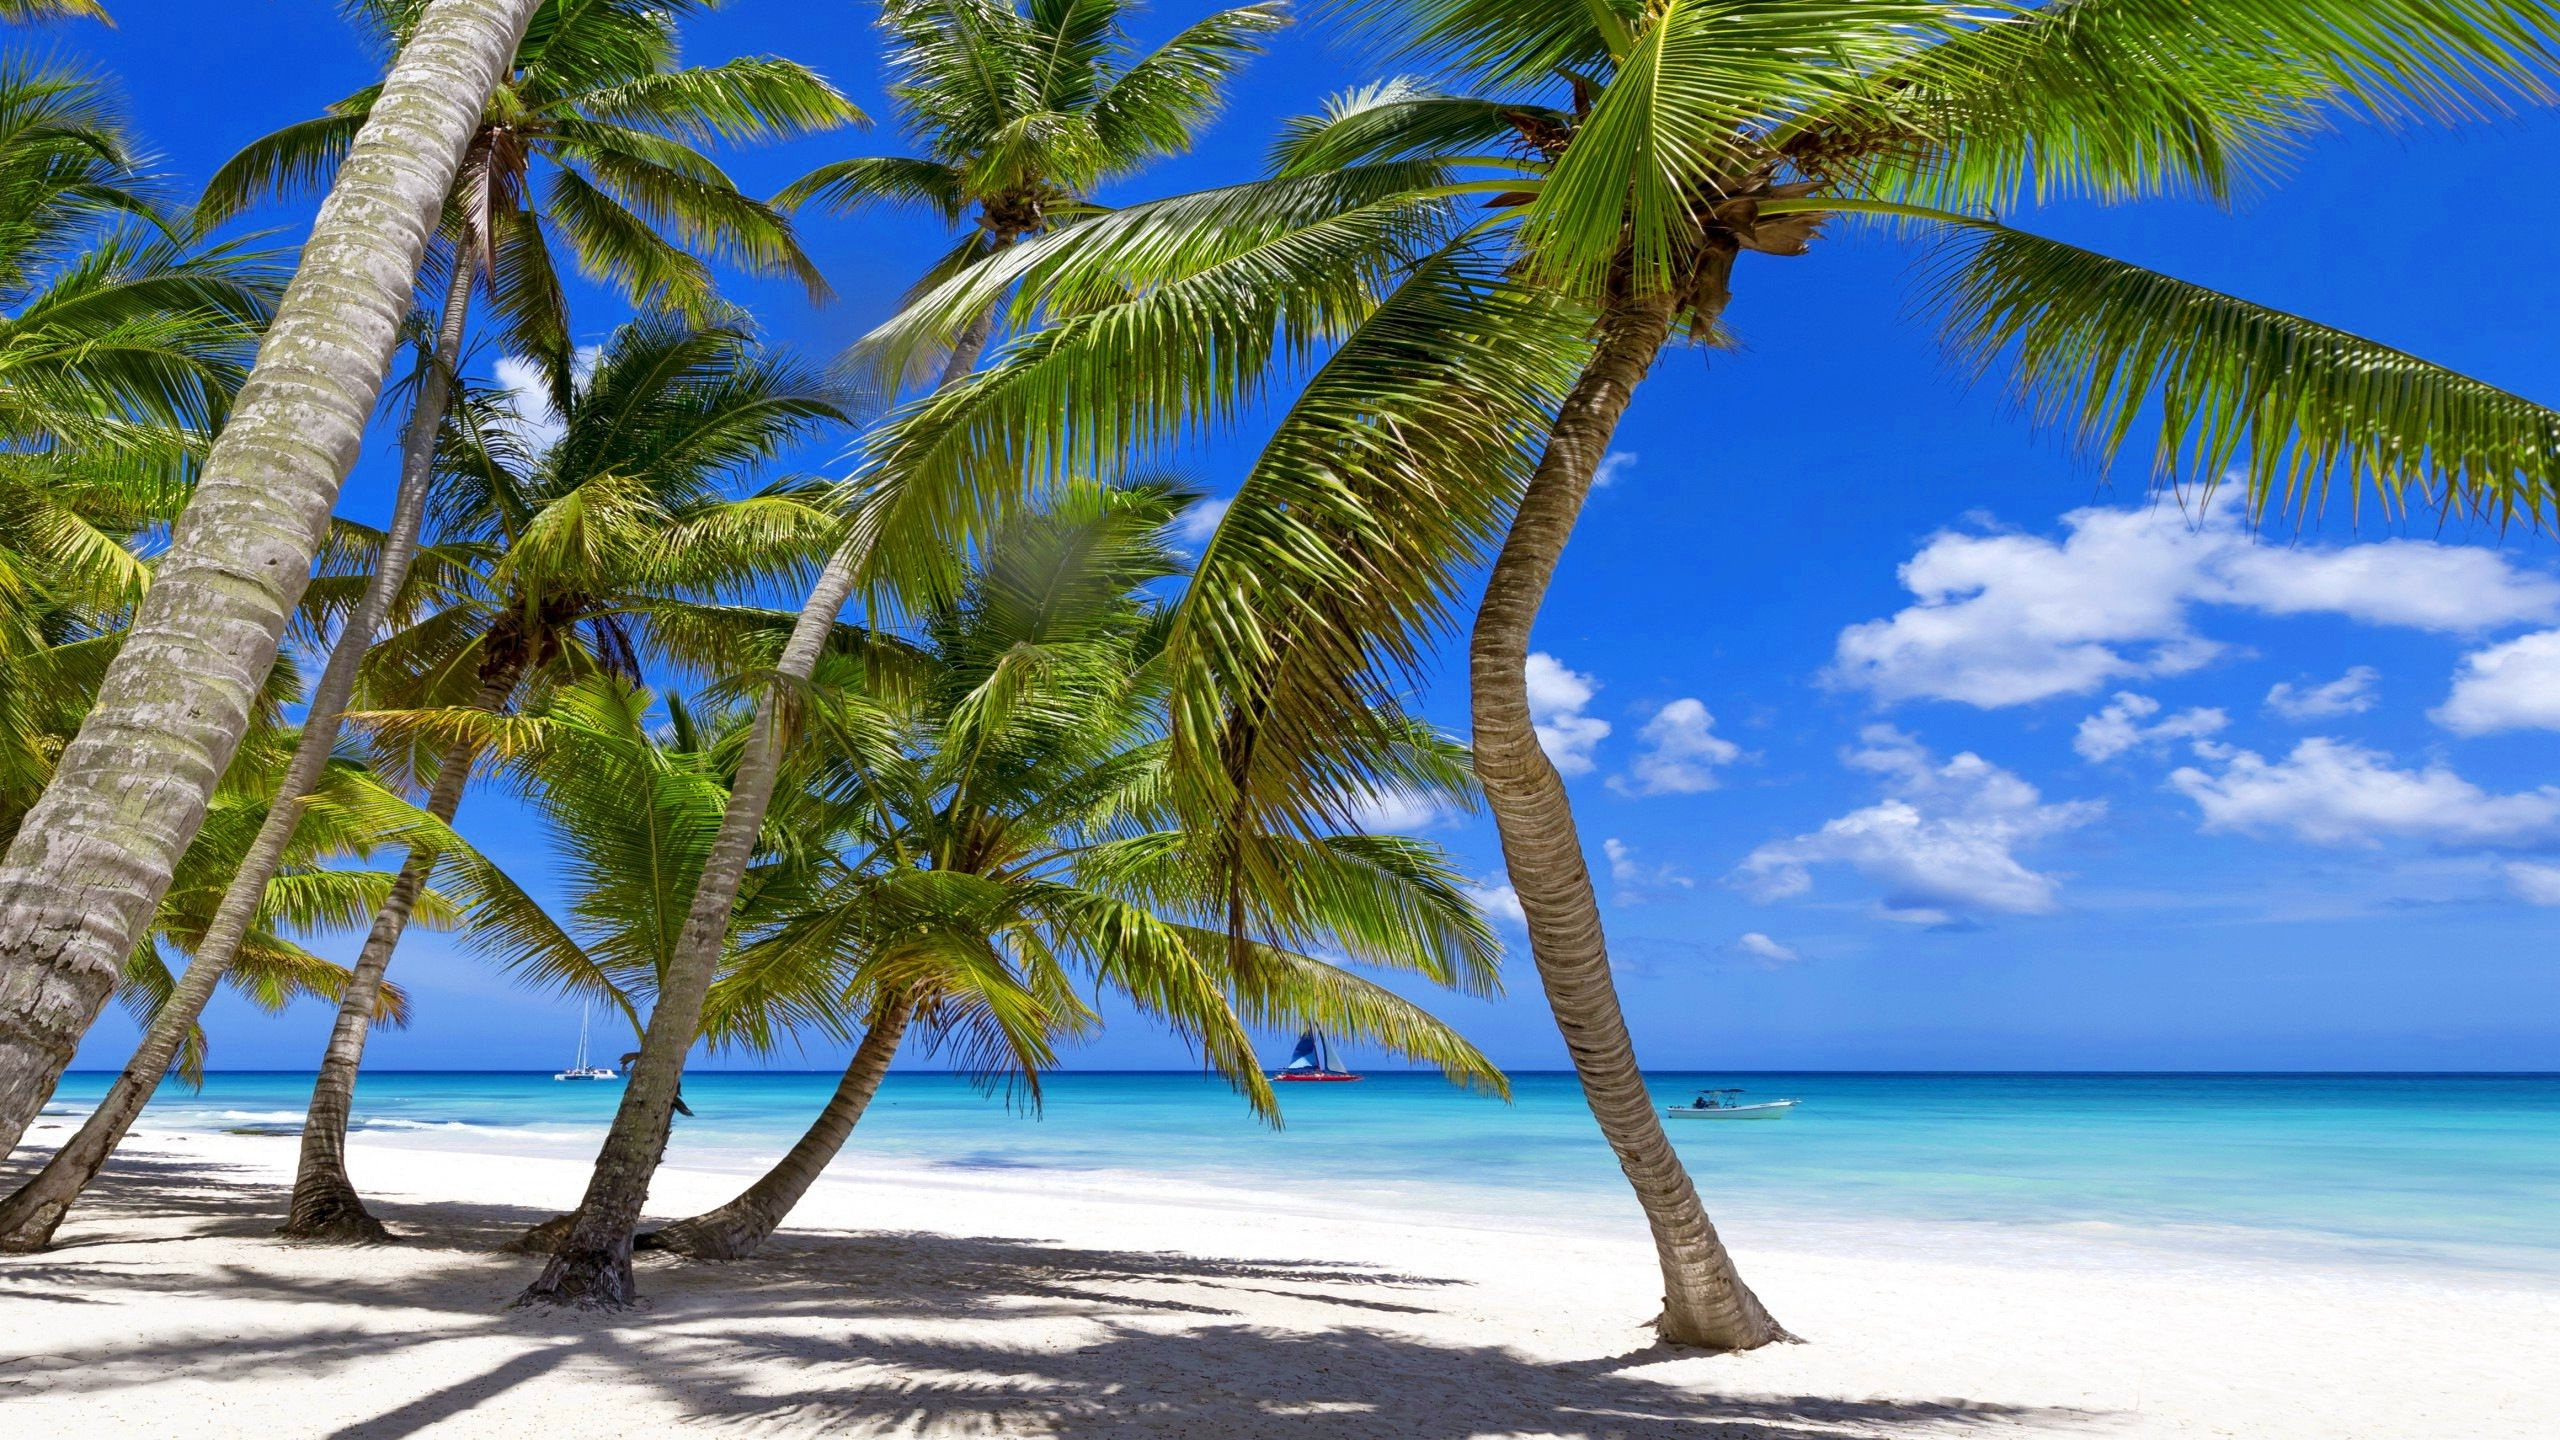 热带地区, 大海, 海岸, 加勒比, 植被 壁纸 2560x1440 允许